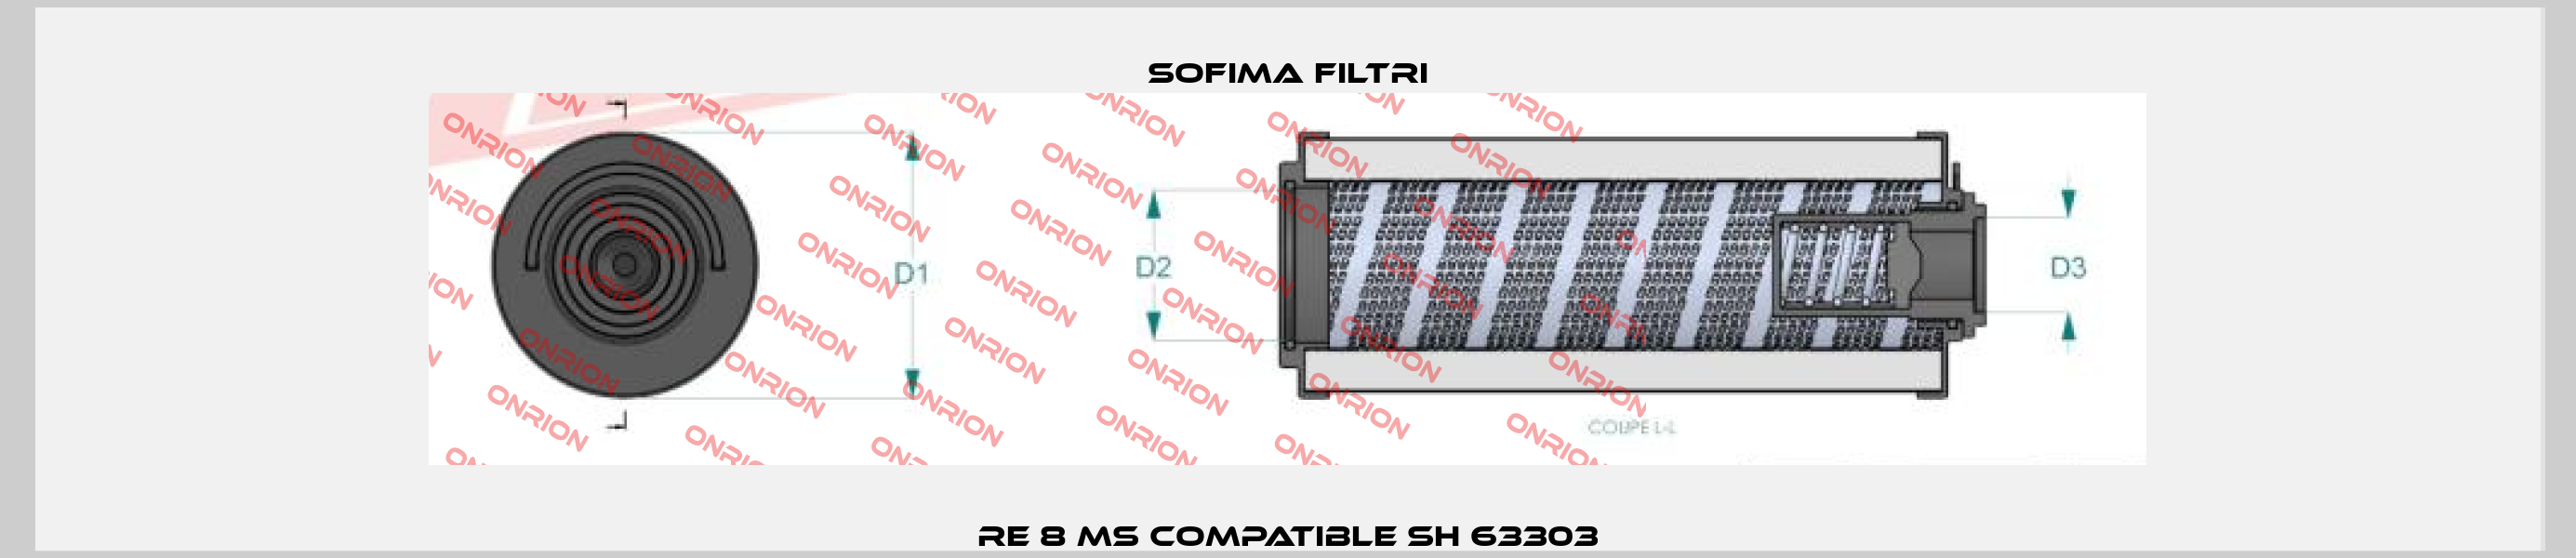 RE 8 MS compatible SH 63303 Sofima Filtri